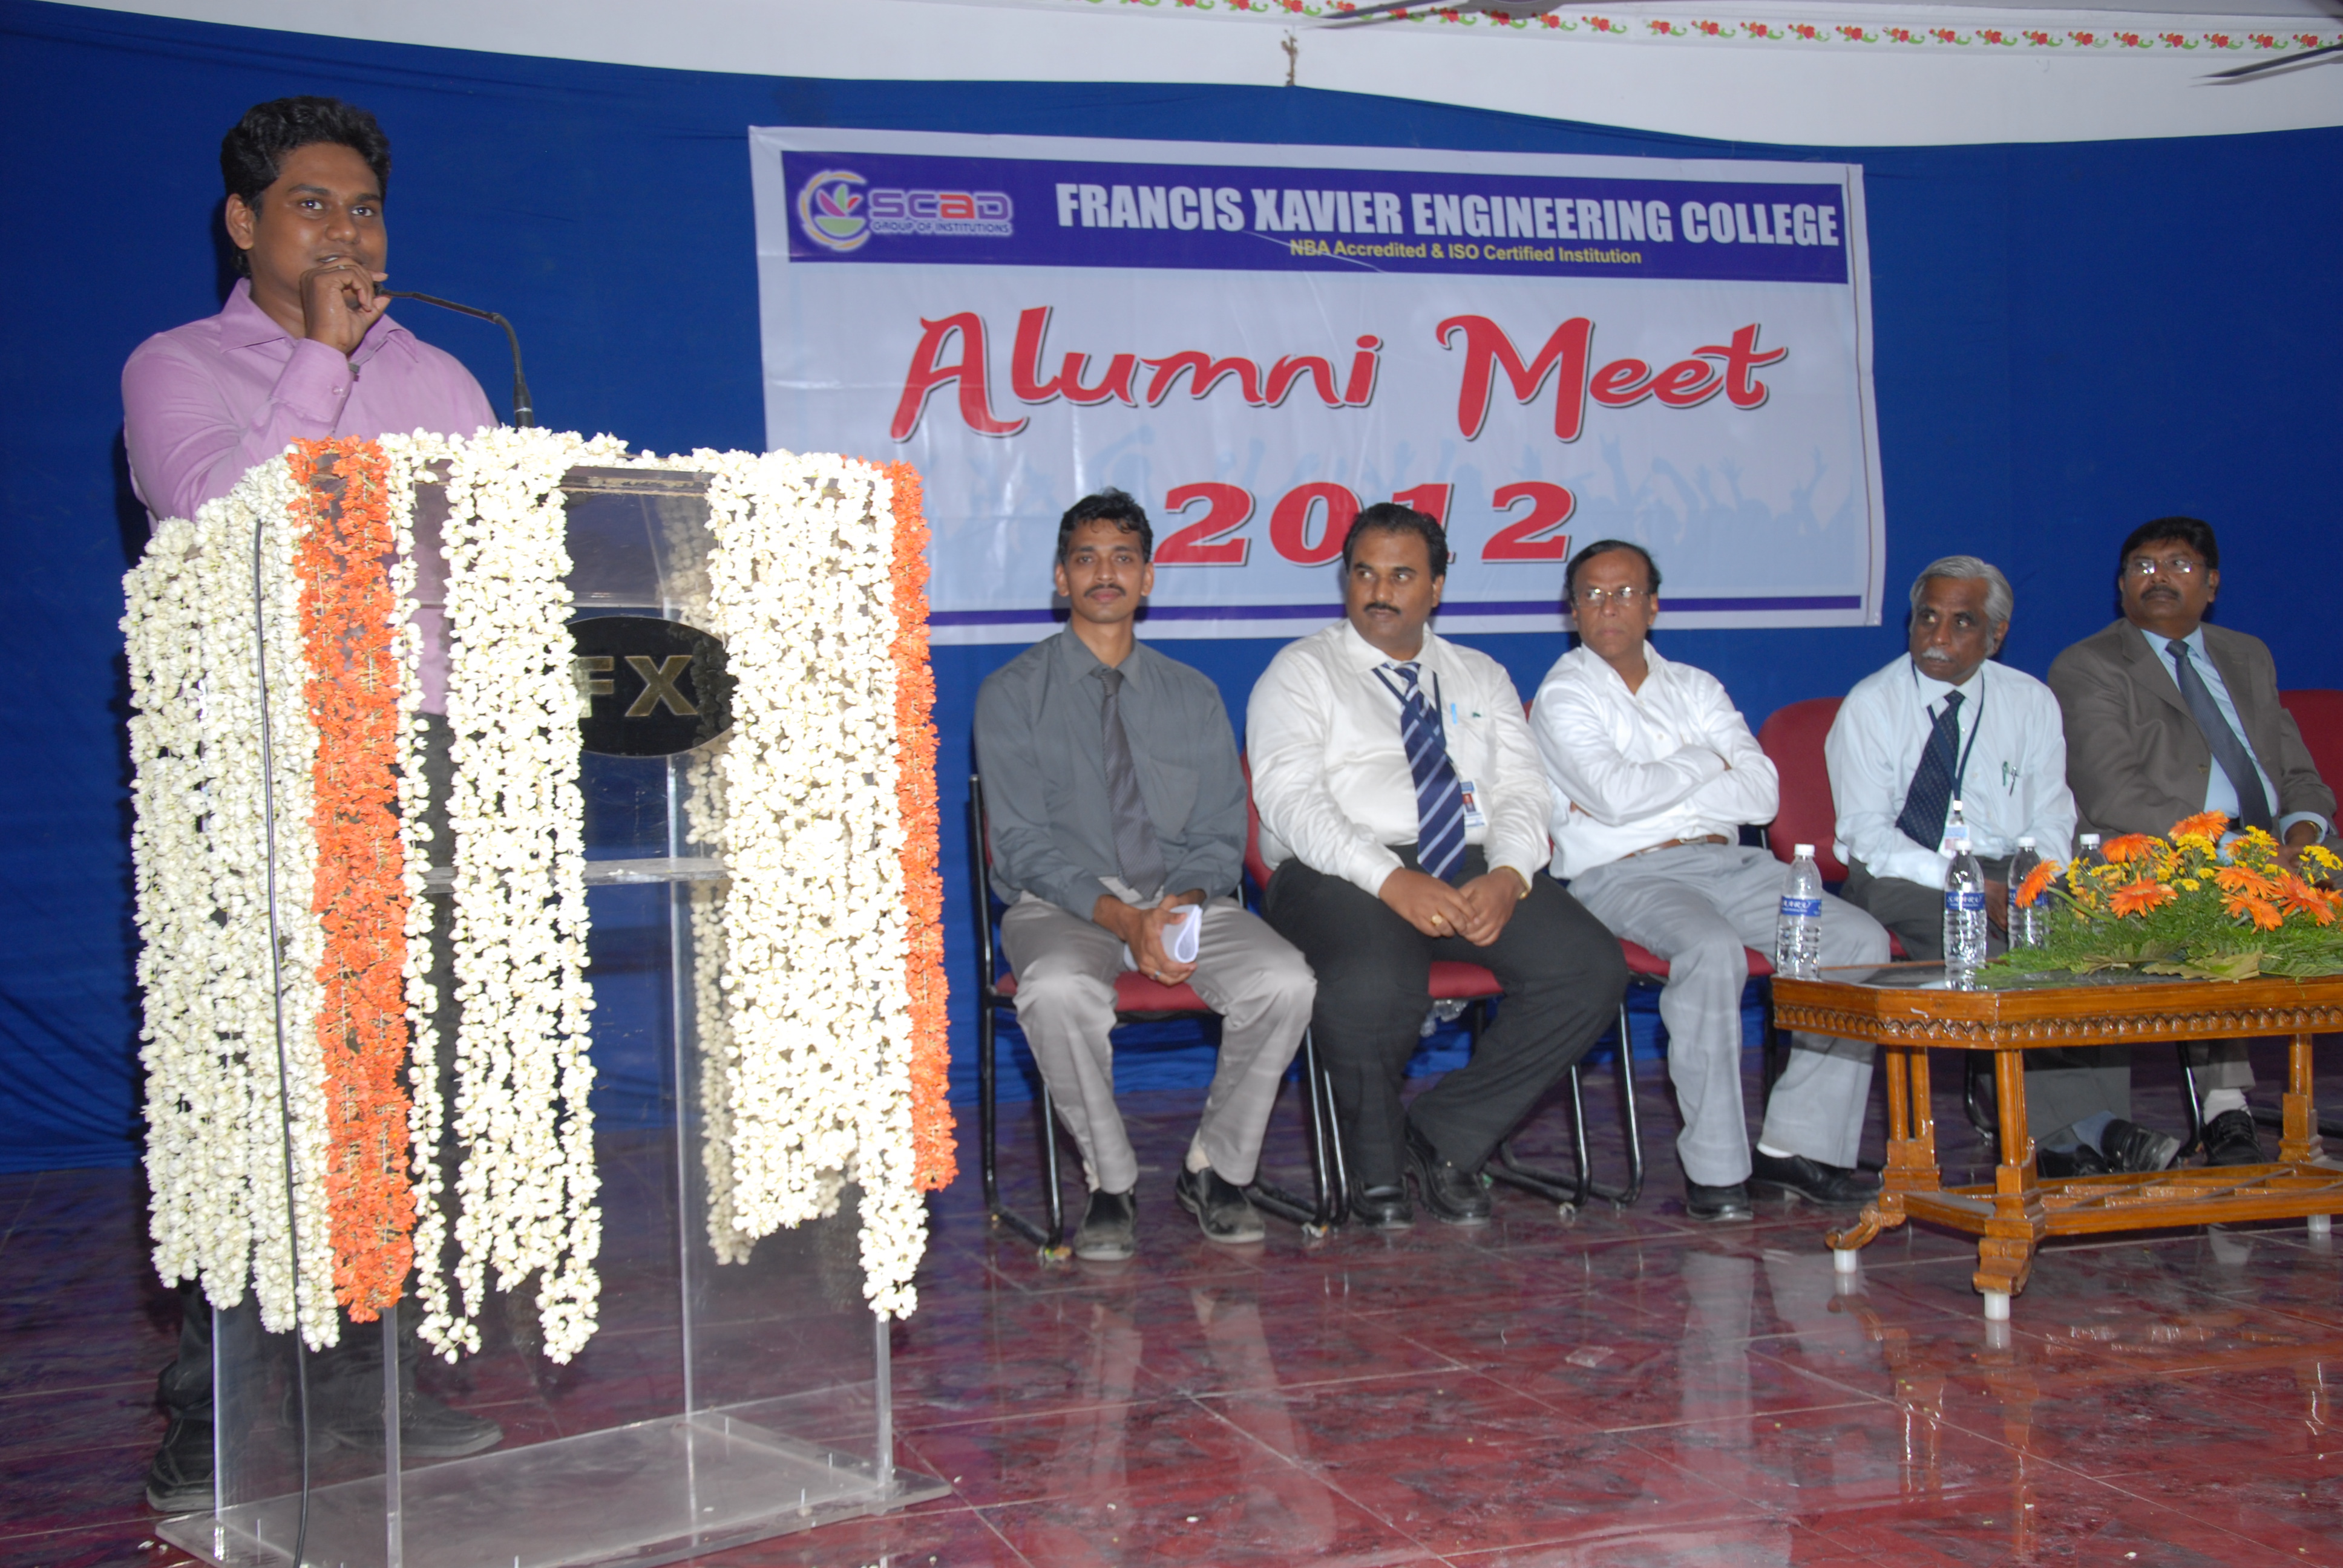 <h2>Alumni Meet 2012</h2>